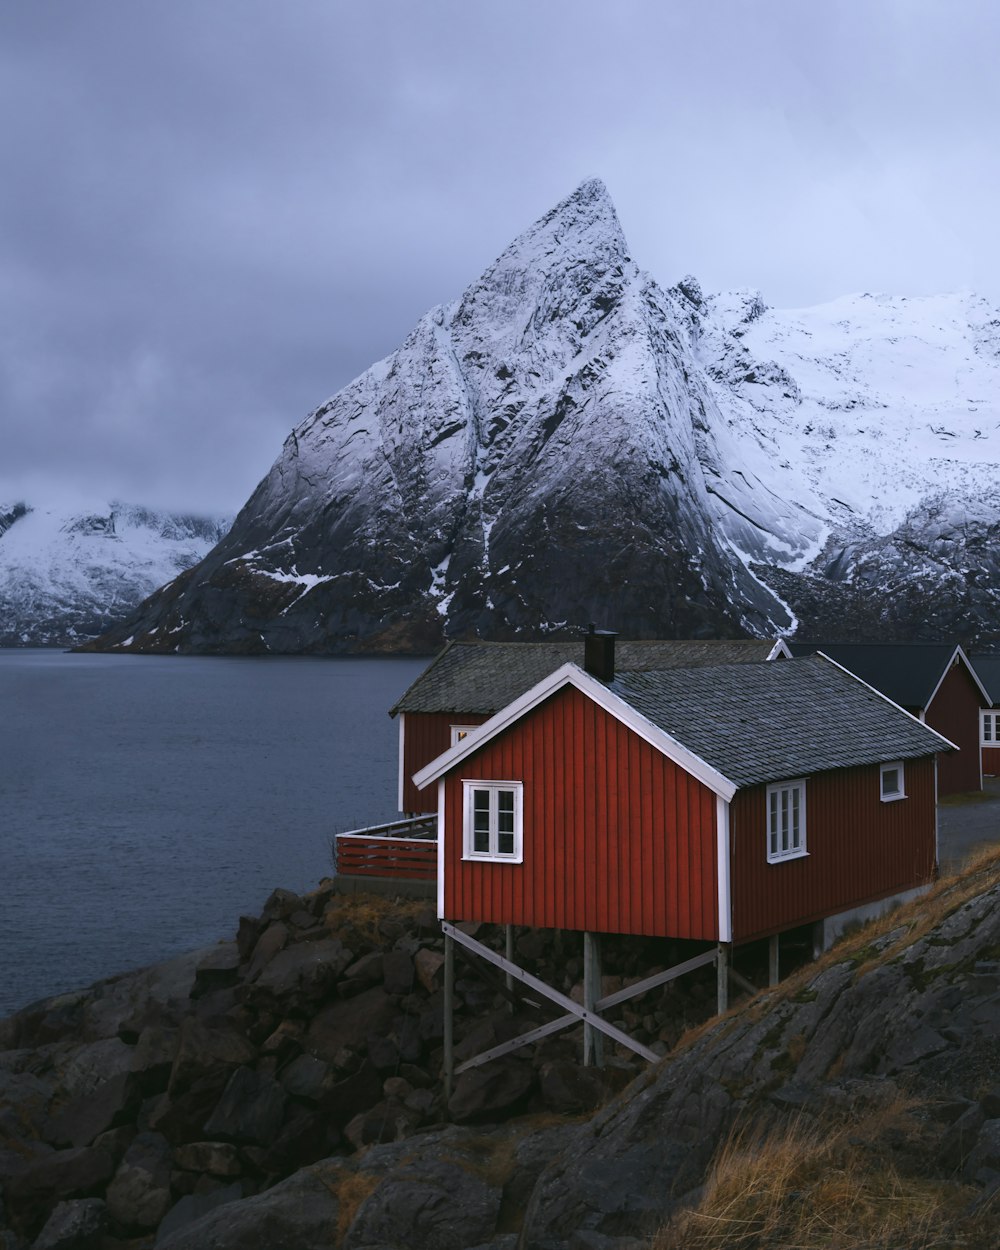 casa di legno rossa e bianca vicino allo specchio d'acqua e alla montagna coperta di neve durante il giorno